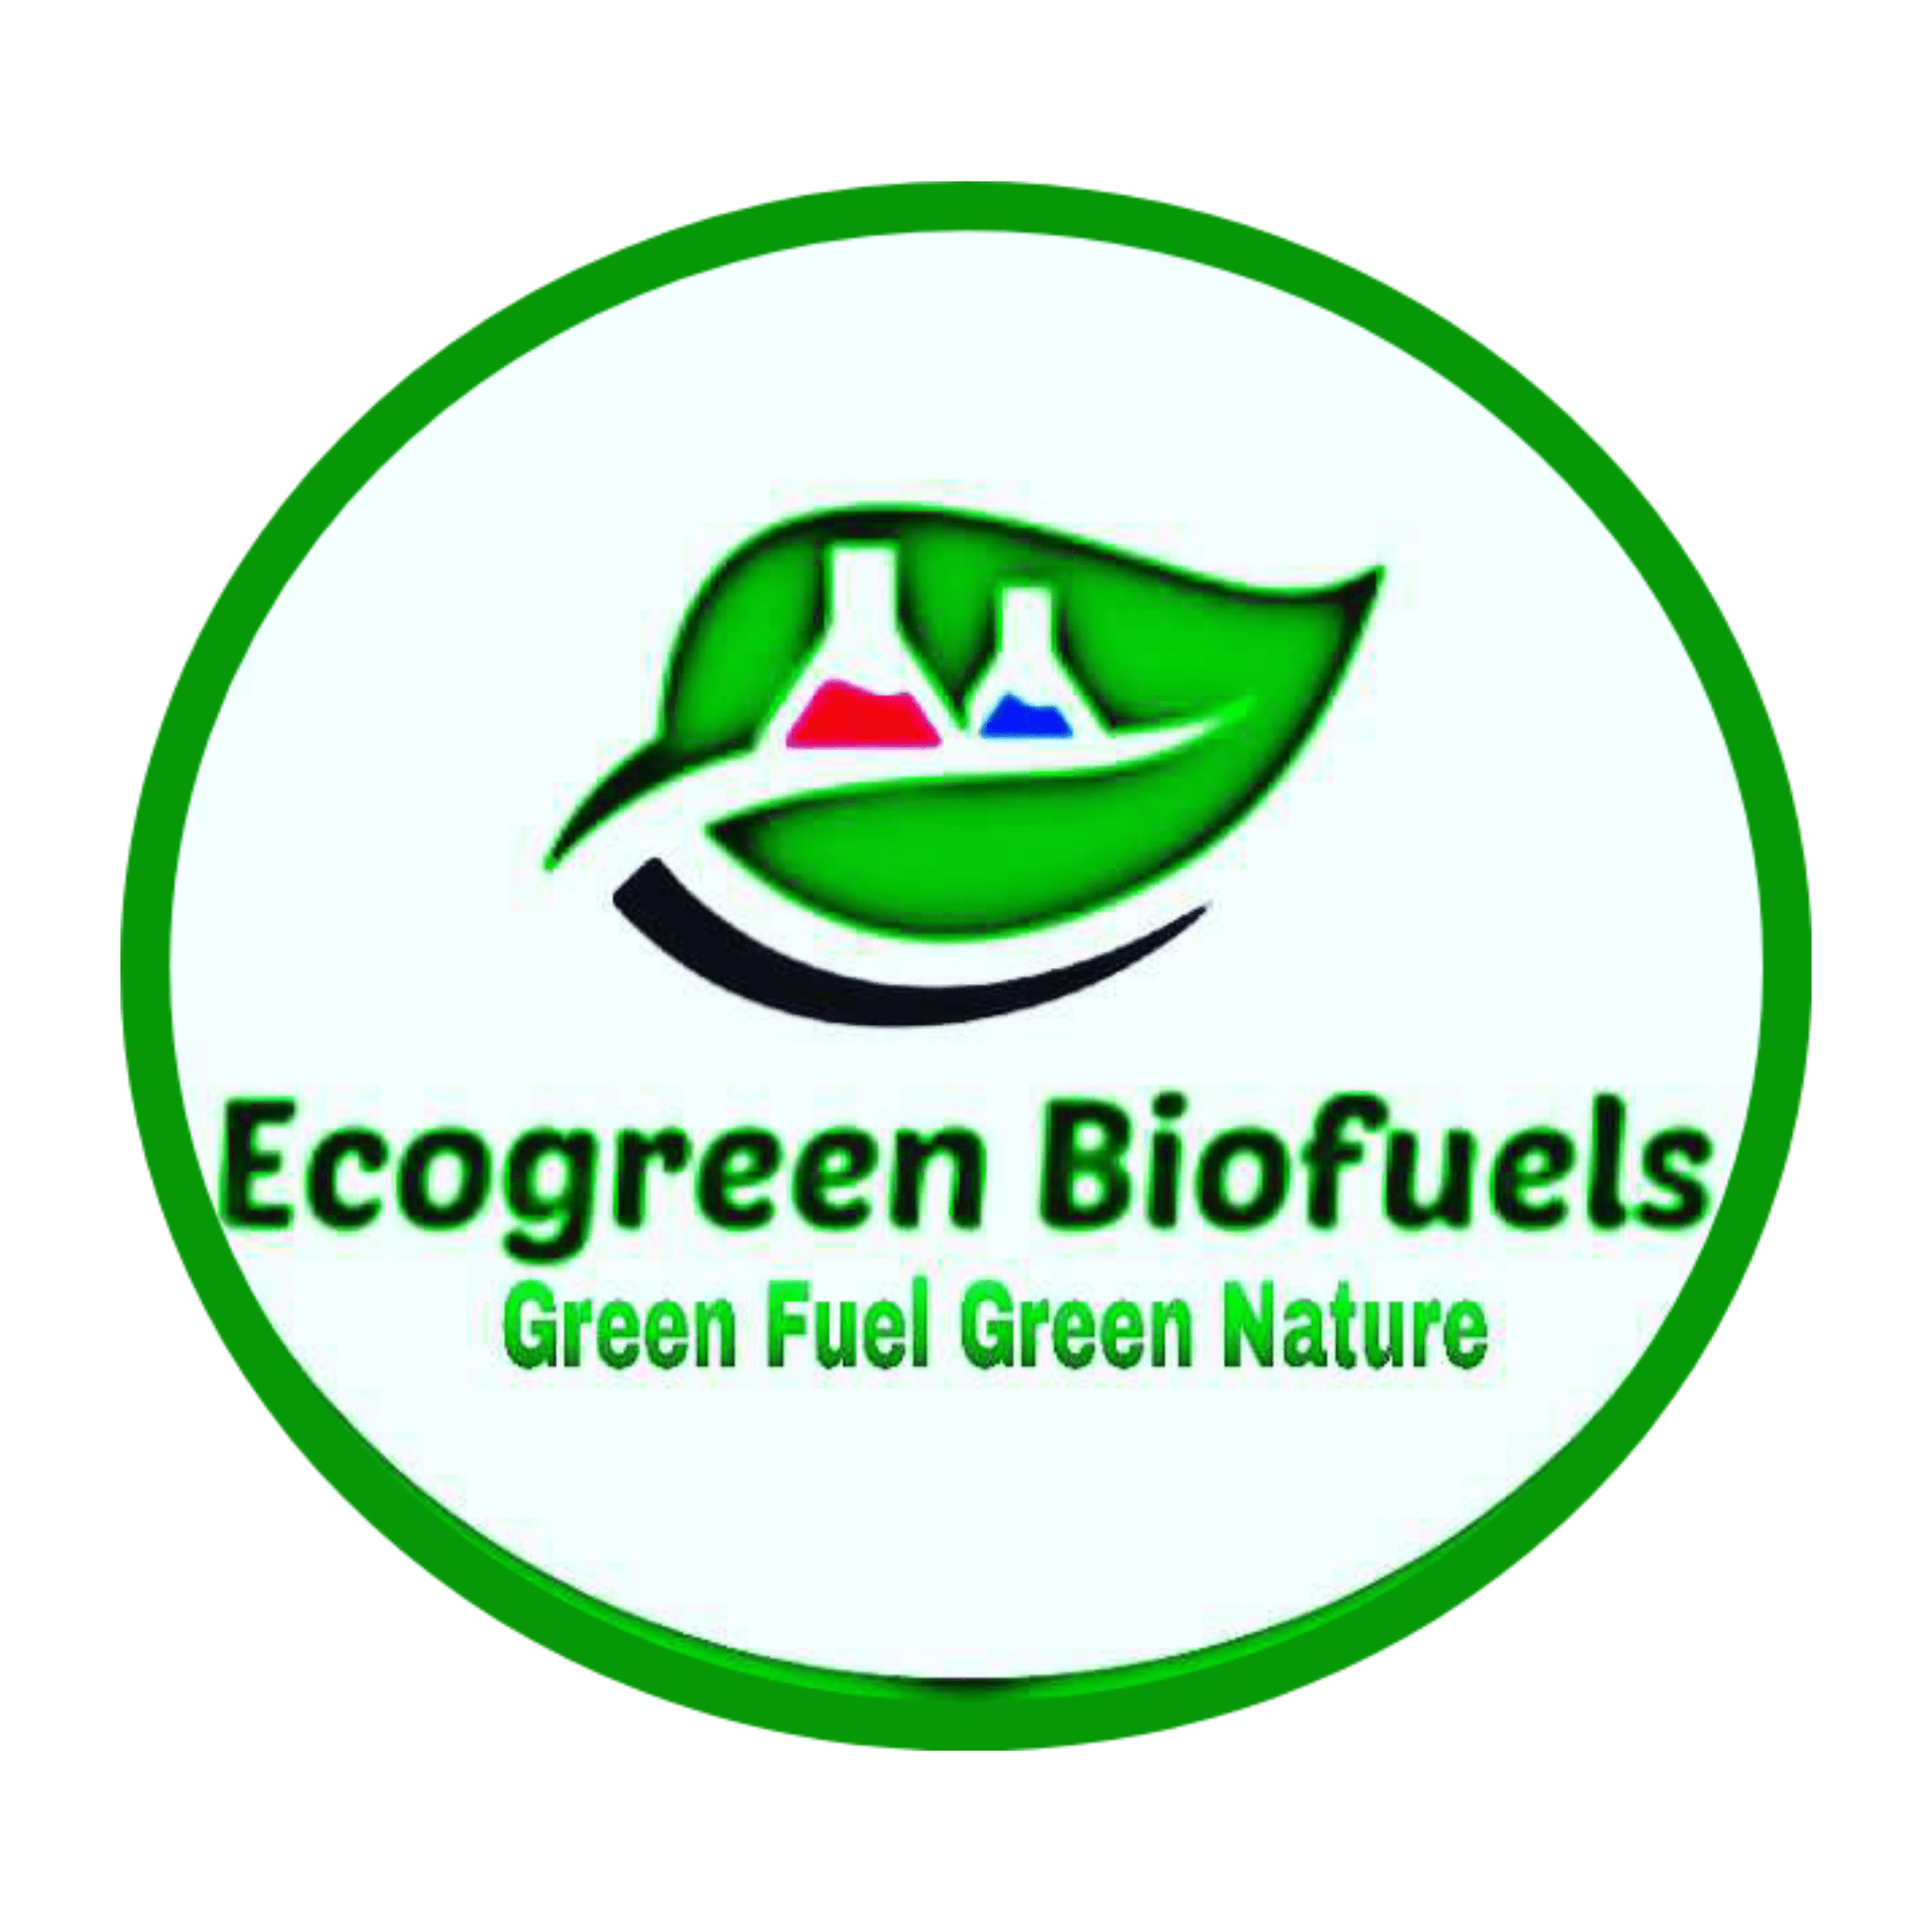 Ecogreen Bio fuels